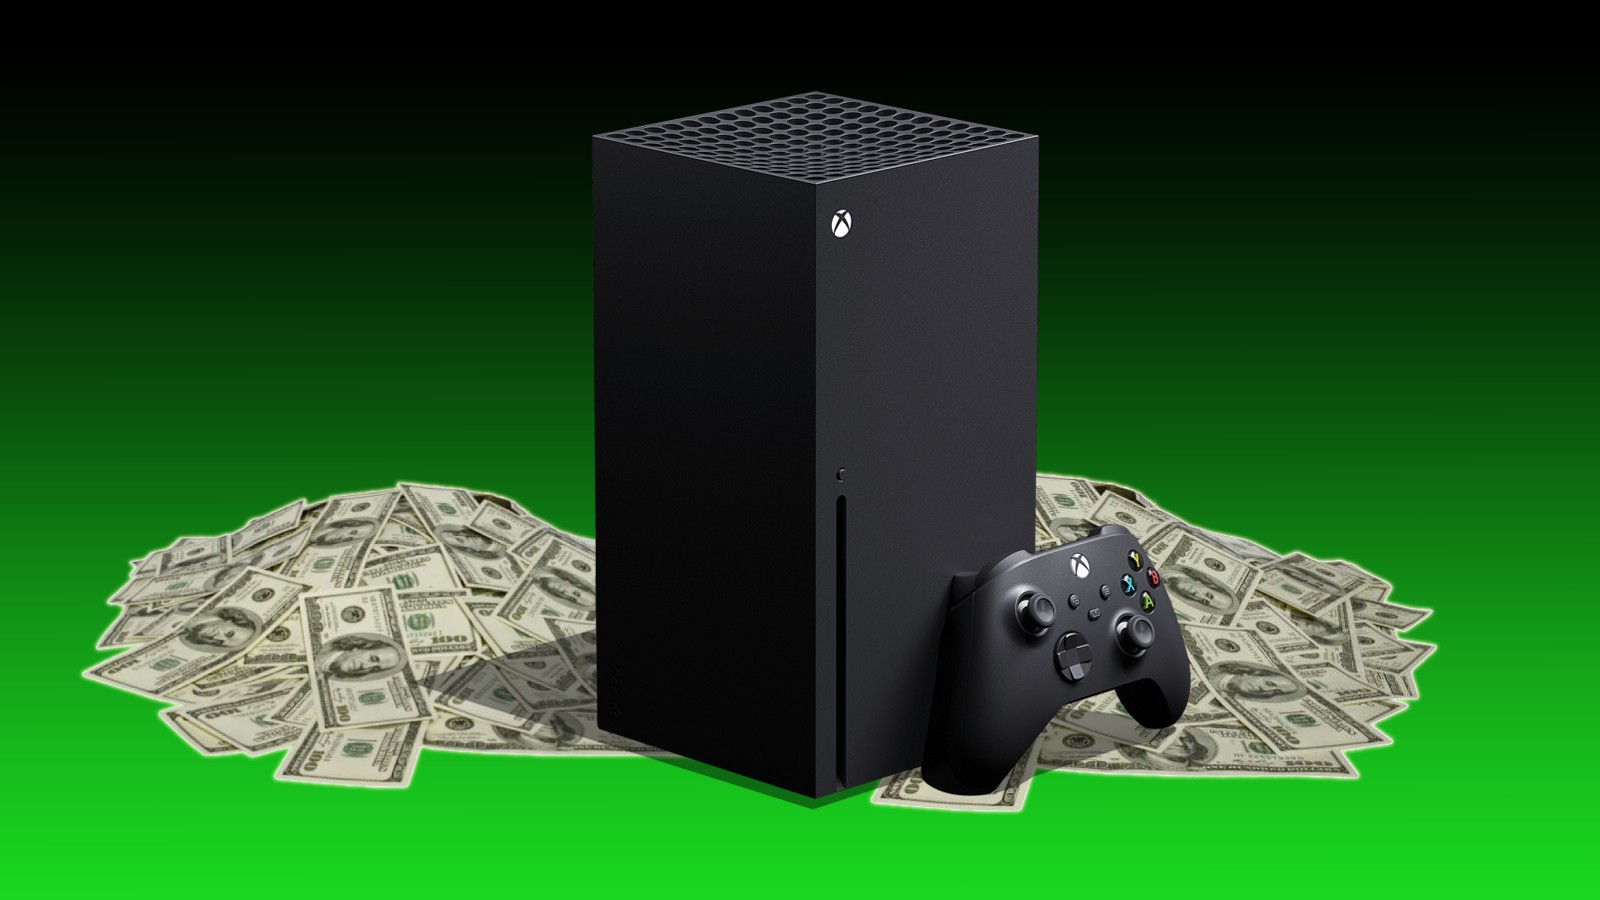 G1 - Microsoft irá fechar divisão do Xbox que produzia série sobre